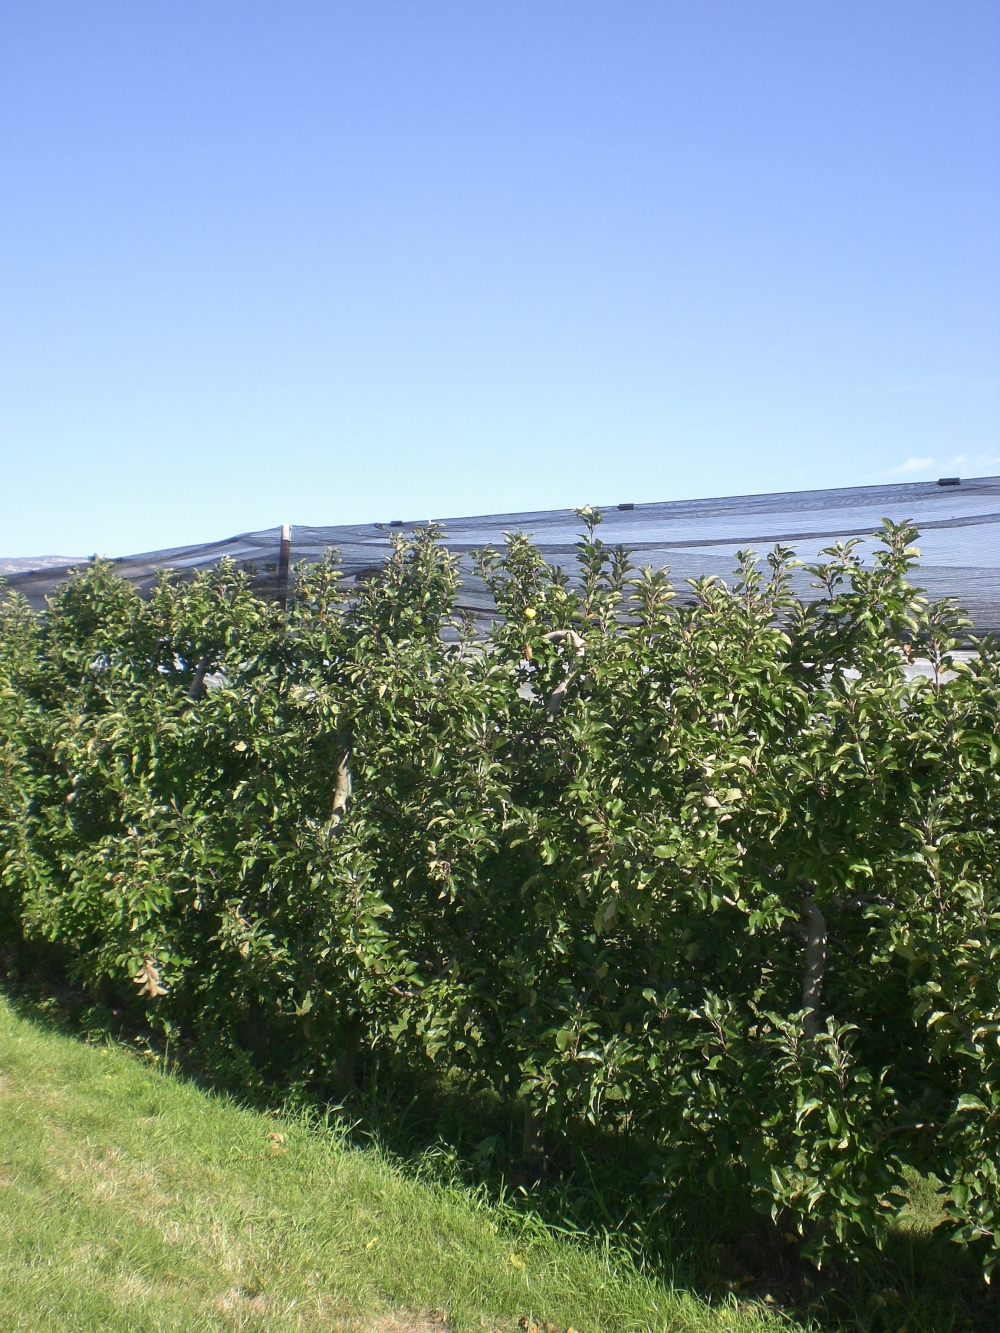  En pommes, la France table sur une récolte de 1,375 million de tonnes. Un volume faible, similaire à celui de l'an passé.